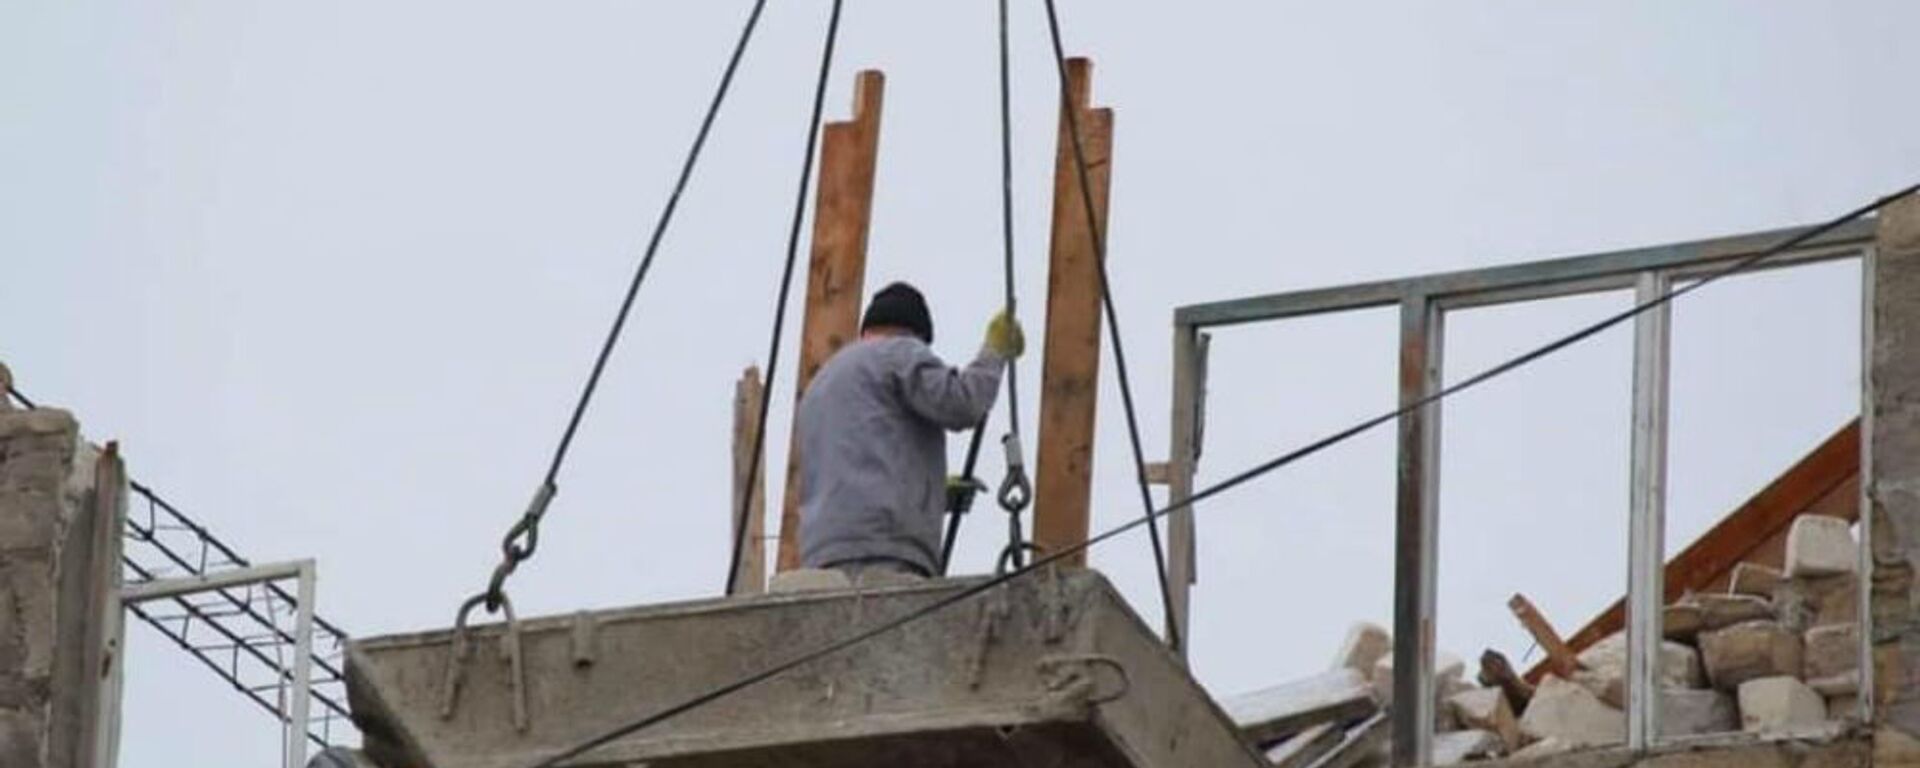 Ремонтные работы по восстановлению гражданских объектов после войны (9 января 3032). Карабах - Sputnik Армения, 1920, 03.02.2021